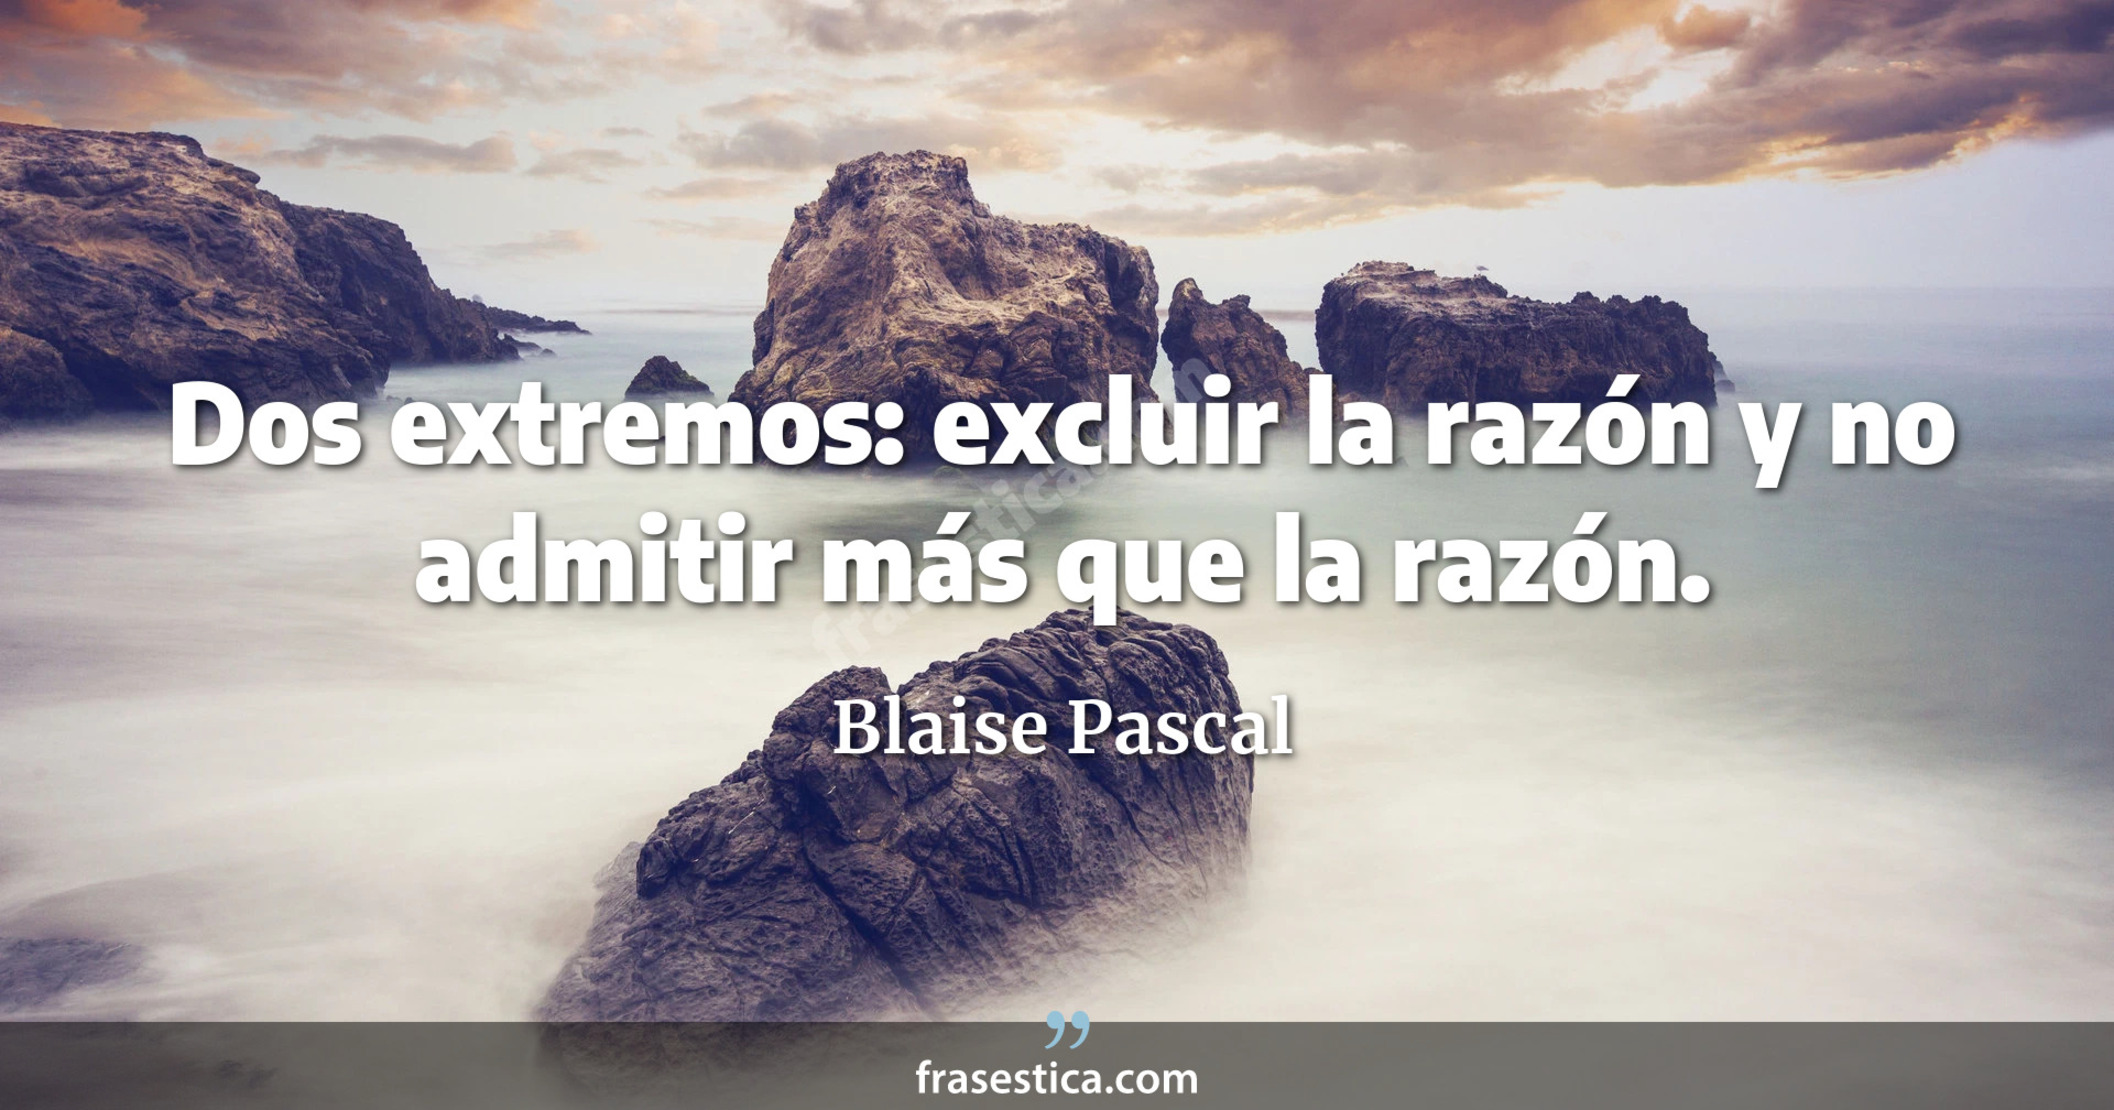 Dos extremos: excluir la razón y no admitir más que la razón. - Blaise Pascal